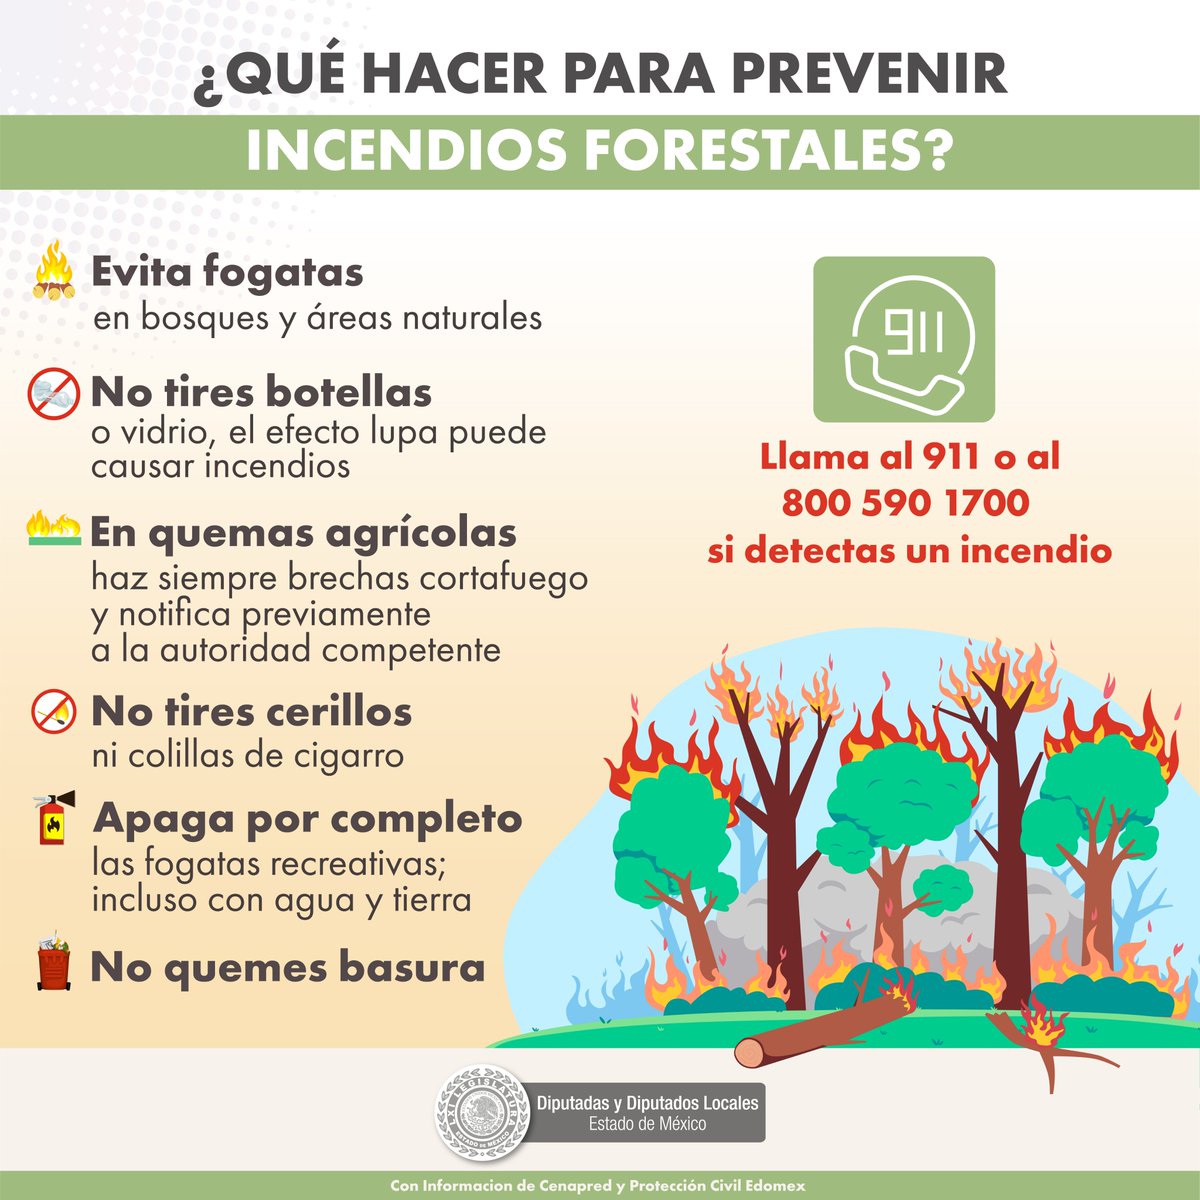 🏾‍🚒¿#SabíasQue, la contaminación por los #IncendiosForestales también ocasiona que en el Valle de #Toluca y #SantiagoTianguistenco estemos en Fase I de #ContingenciaAmbiental? 🌲🌲🔥🔥 

Sigue las recomendaciones de #Cenapred y cuidemos los recursos naturales más valiosos.